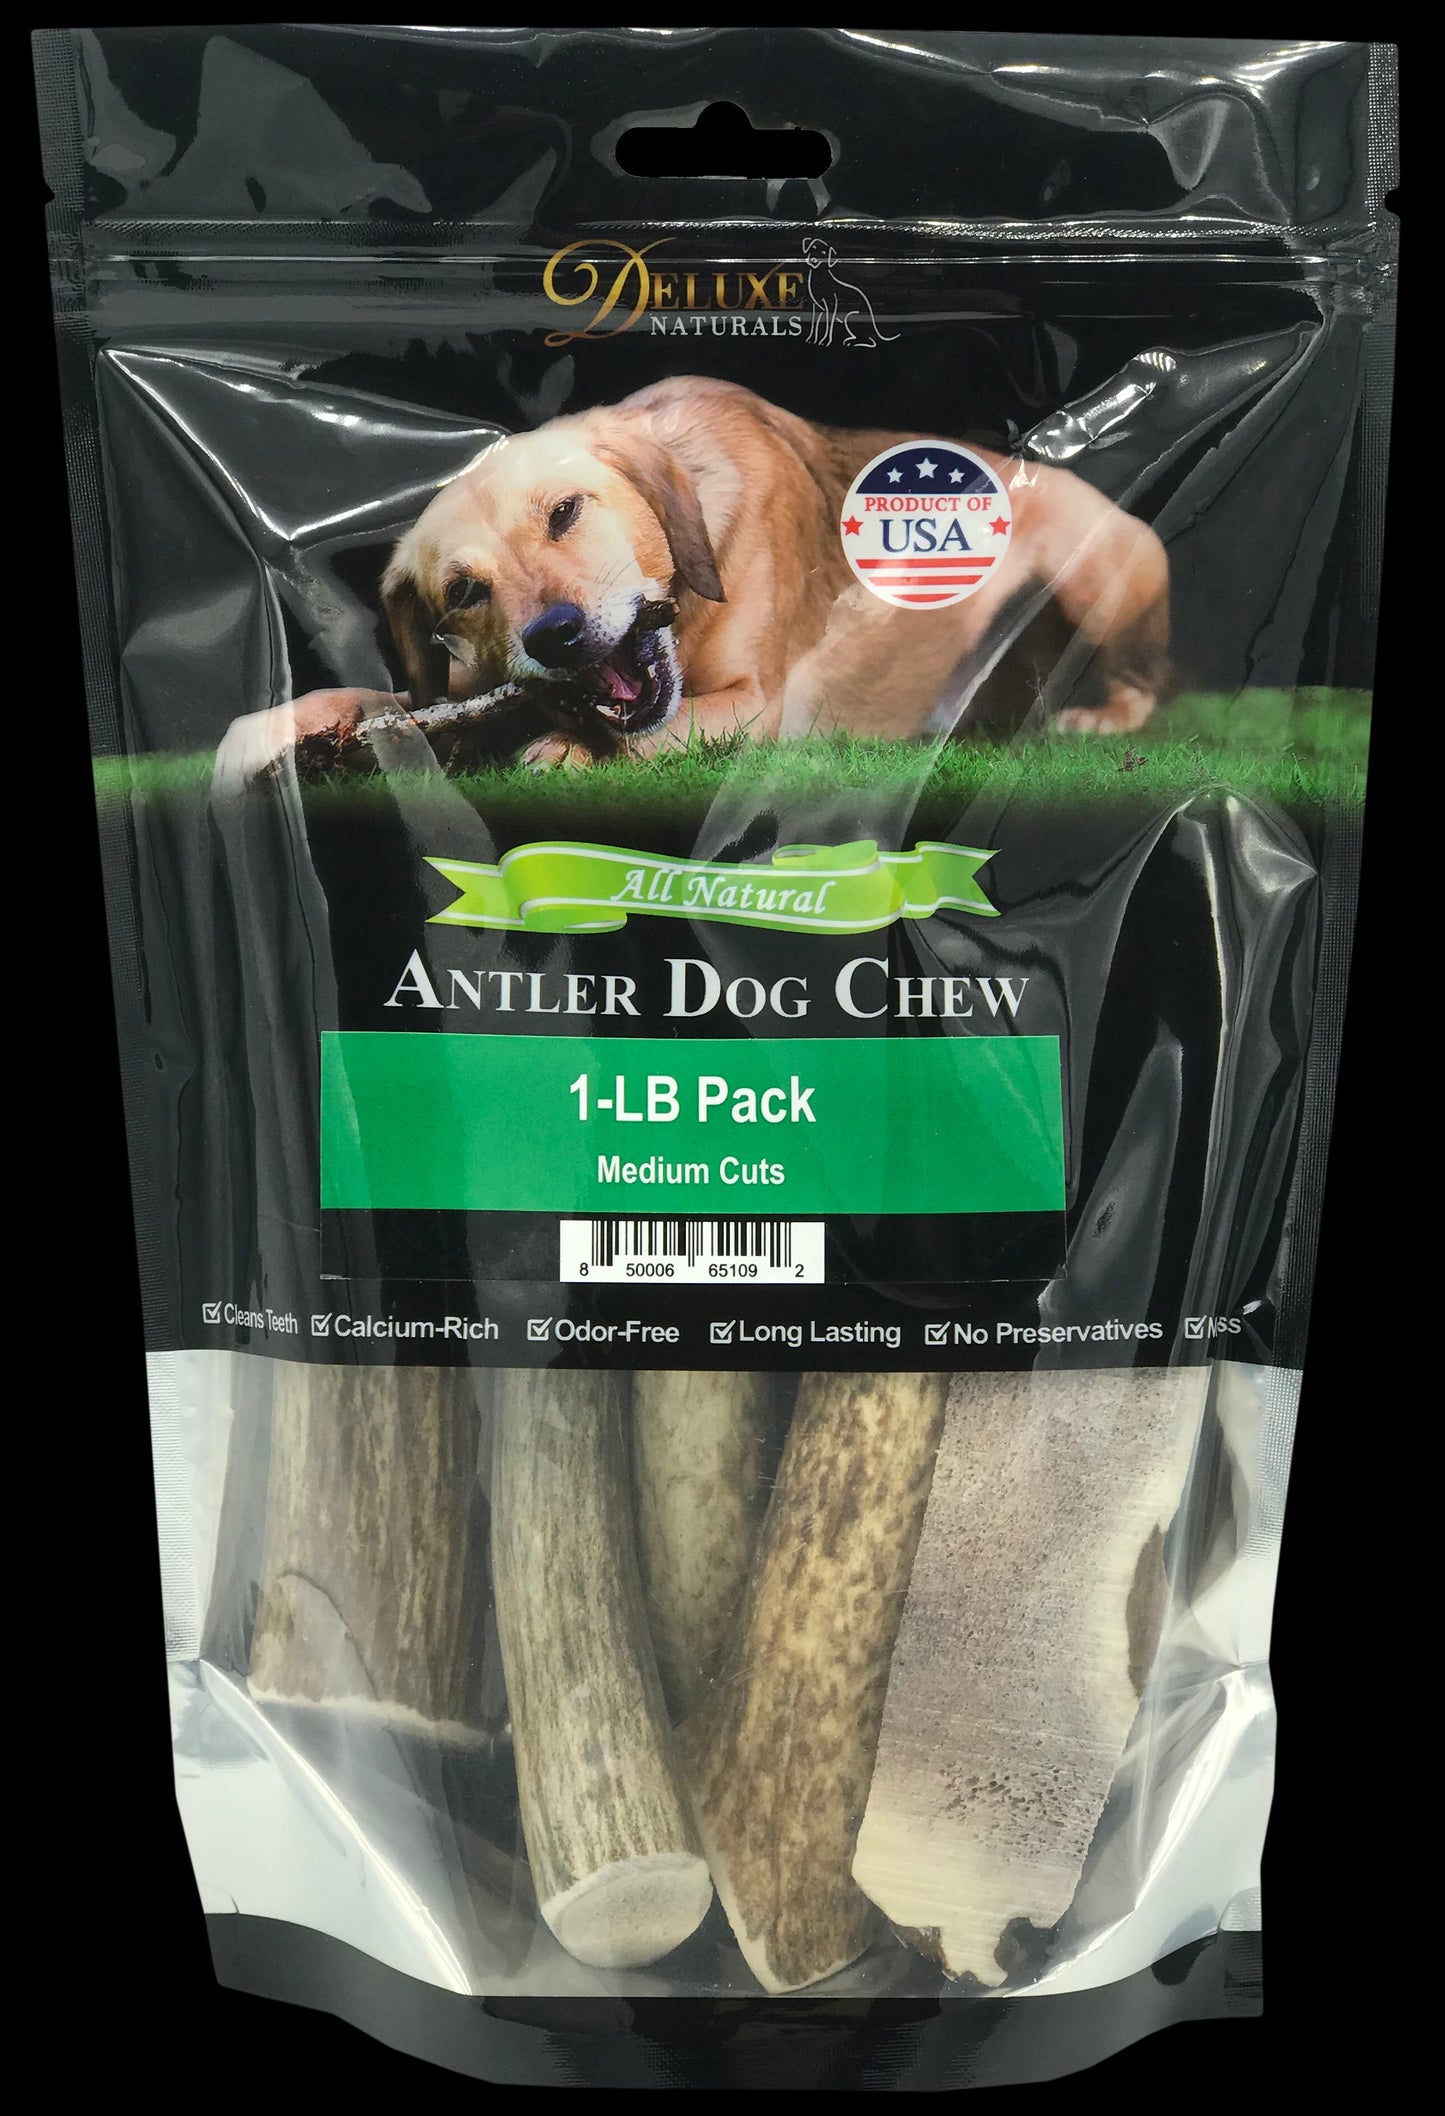 Deluxe Naturals 1-LB Pack Elk Antler Dog Chew - Mixed Medium Cuts